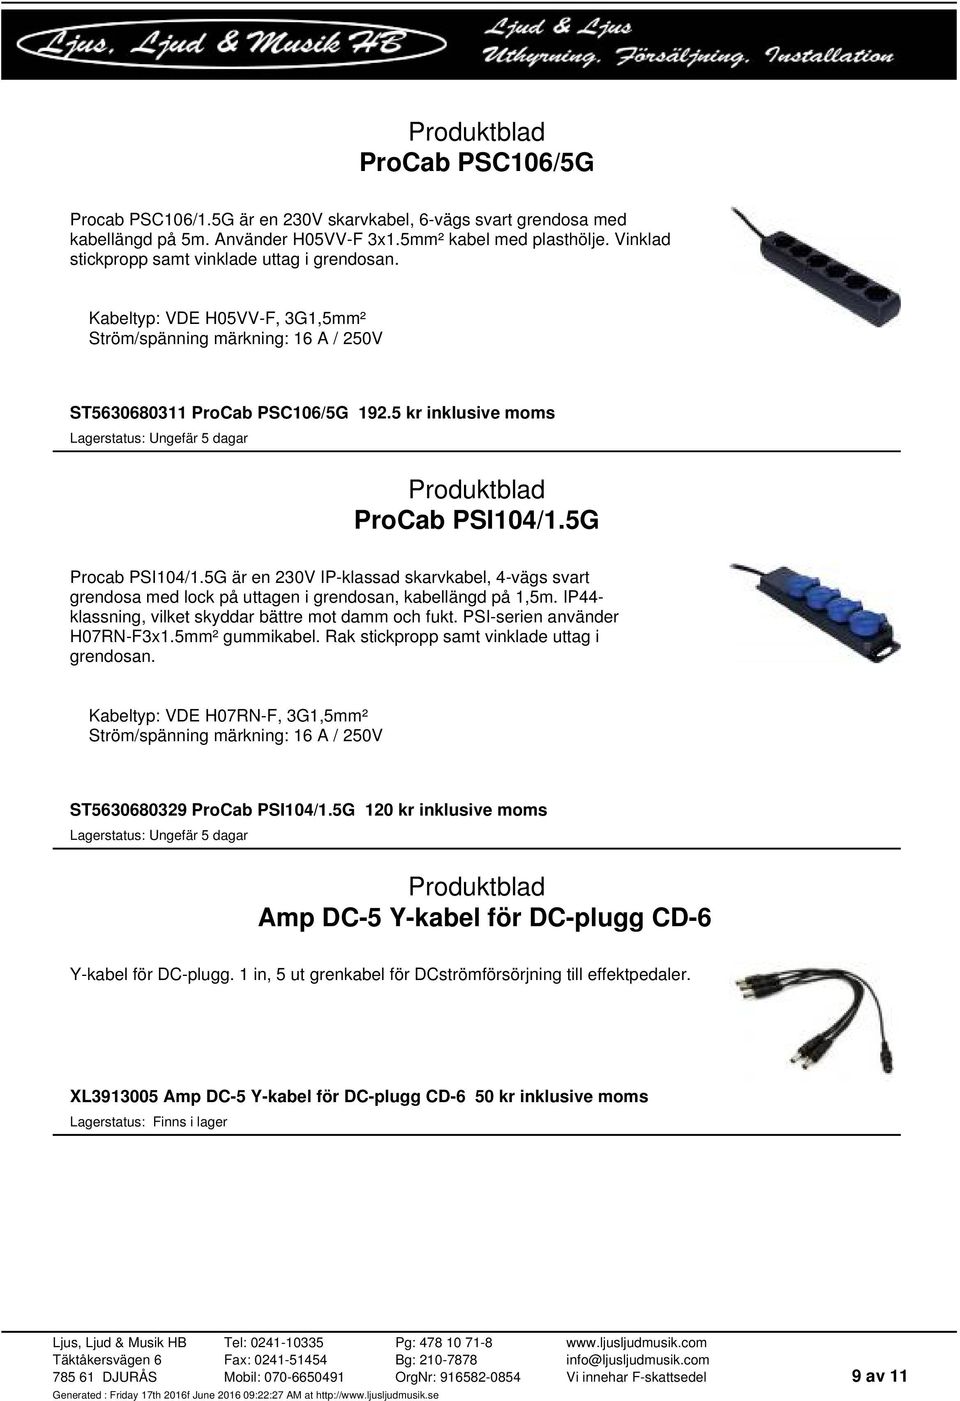 5G Procab PSI104/1.5G är en 230V IP-klassad skarvkabel, 4-vägs svart grendosa med lock på uttagen i grendosan, kabellängd på 1,5m. IP44- klassning, vilket skyddar bättre mot damm och fukt.